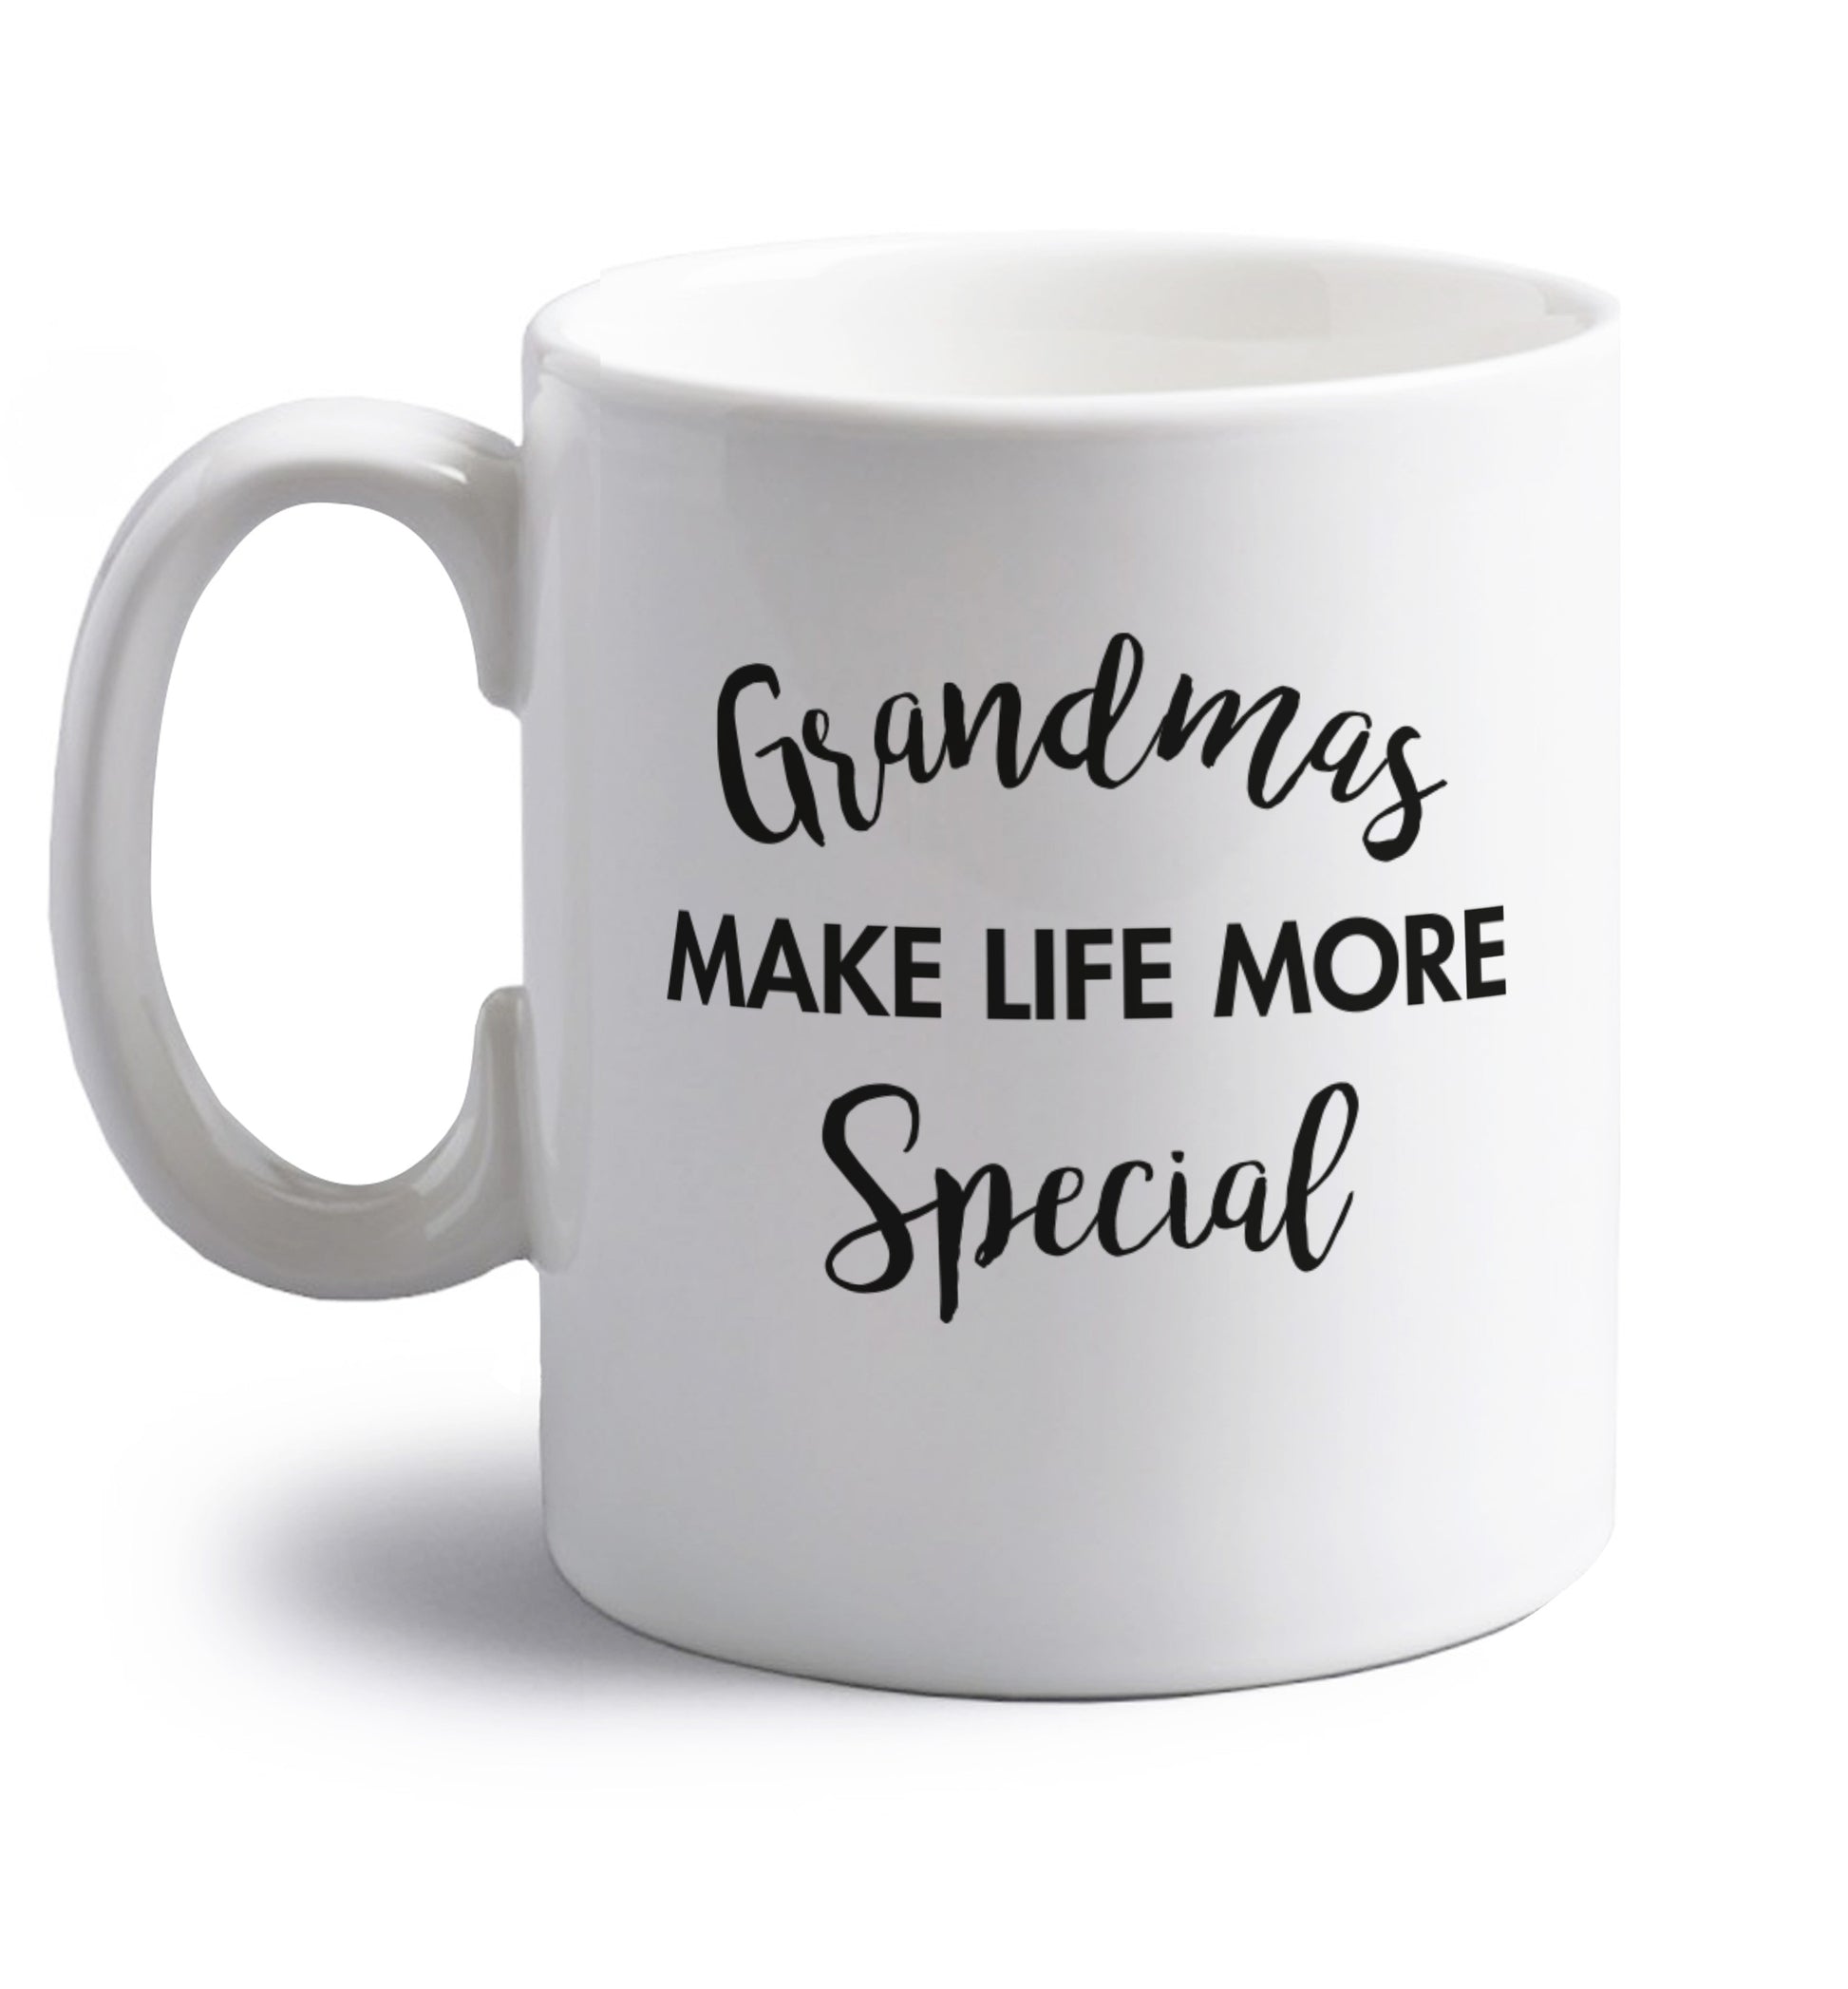 Grandmas make life more special right handed white ceramic mug 